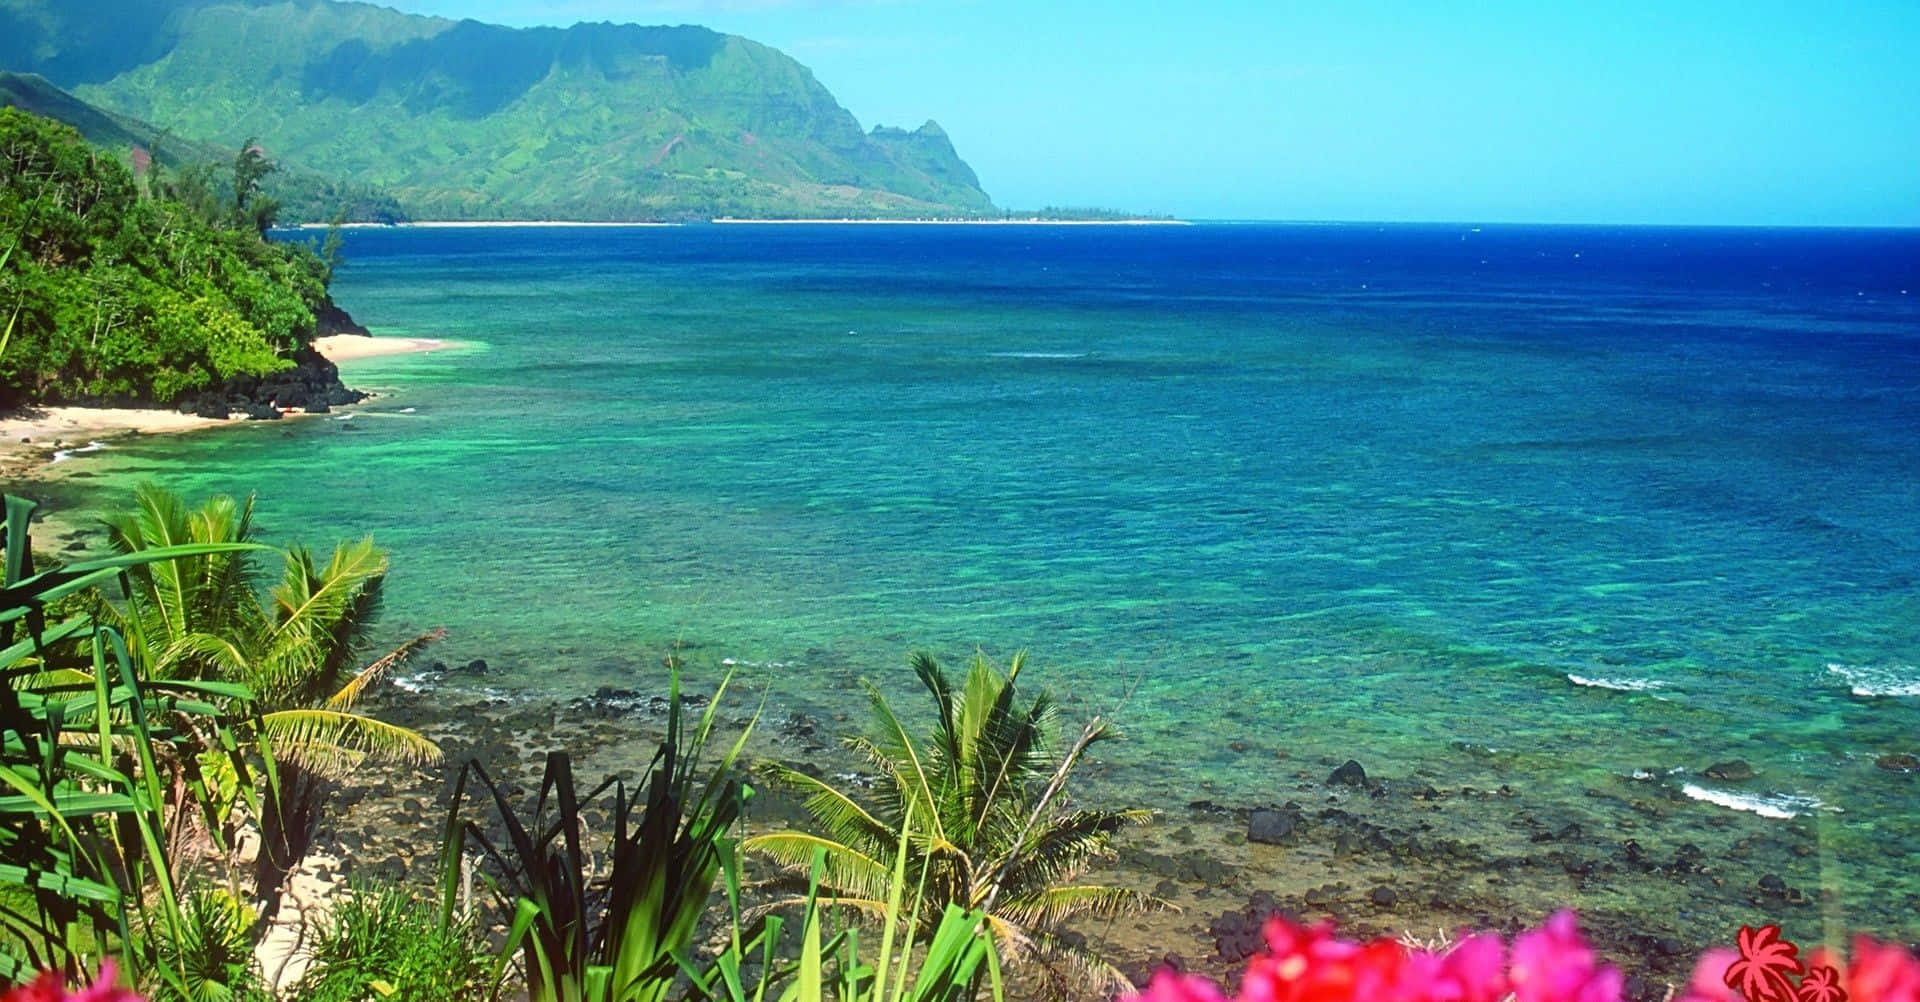 Nyd surfen og sandet på Hawaiis smukke strande. Wallpaper